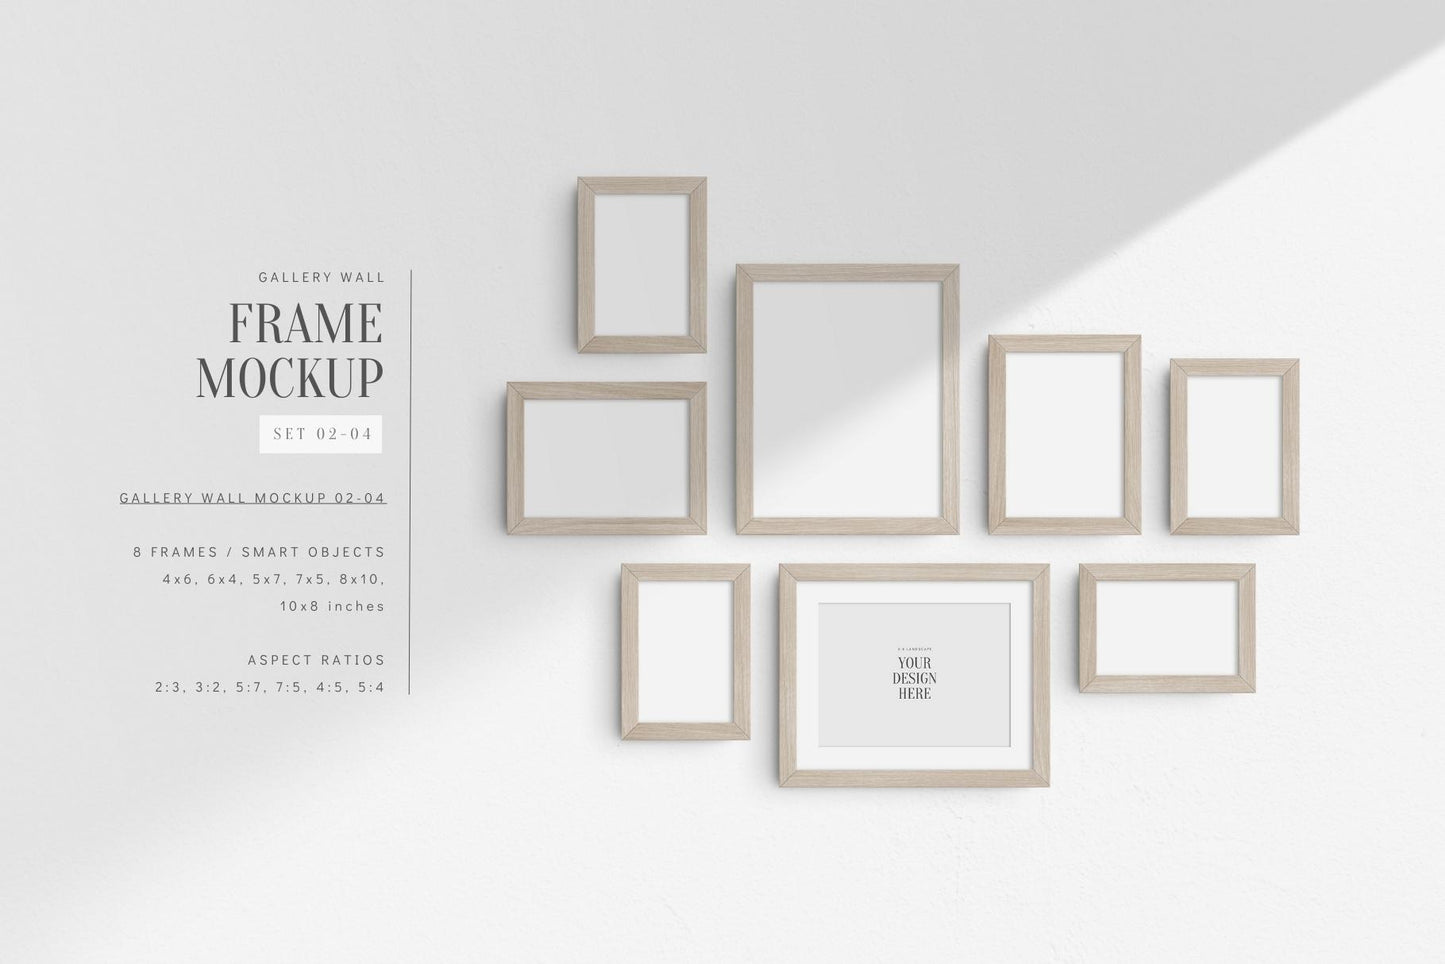 Gallery Wall Mockup | Set of 8 Frames | Frame Mockup | PSD | Light Wood Frames